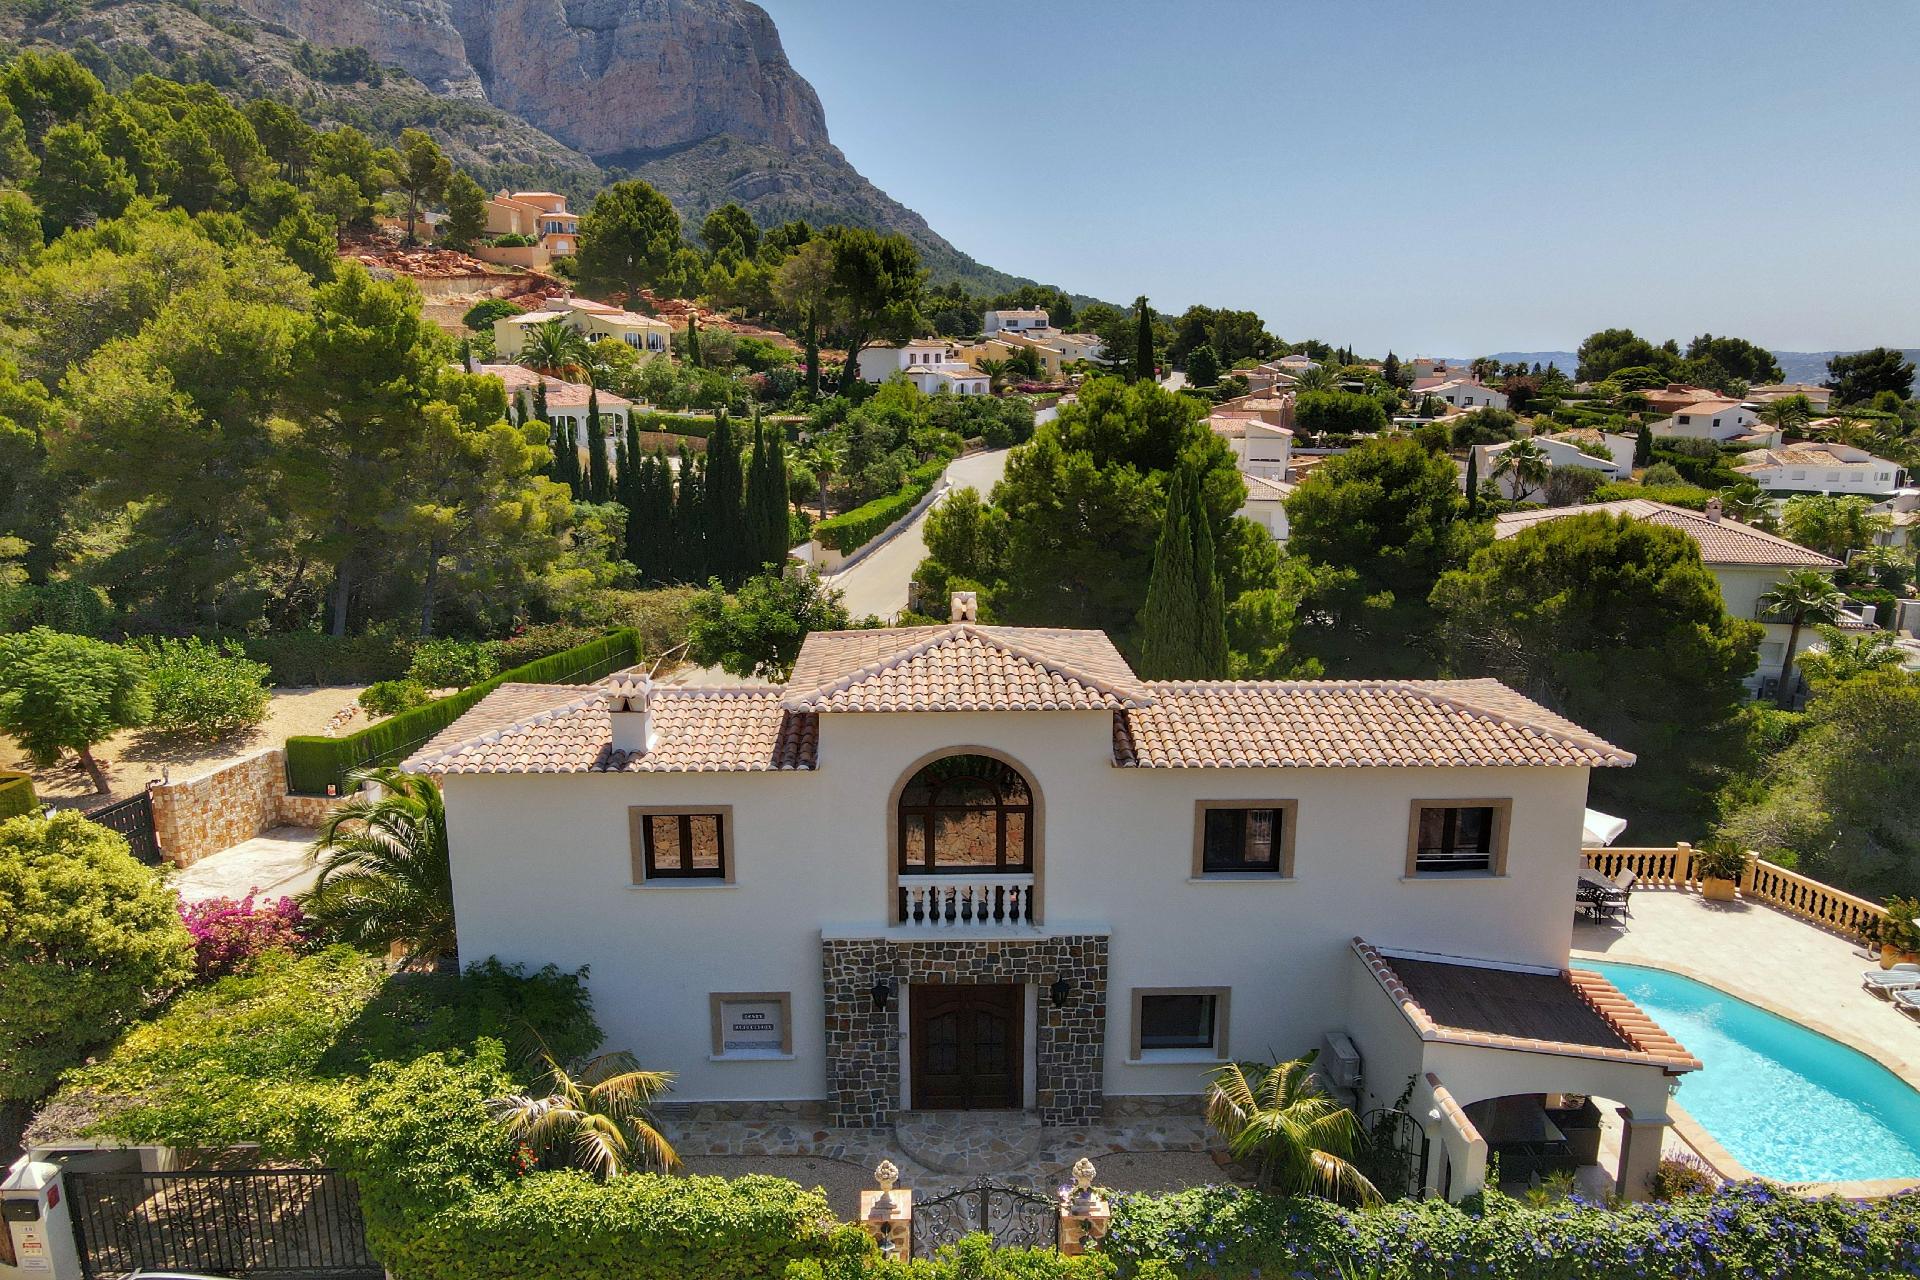 Ferienhaus mit Privatpool für 12 Personen ca. Ferienhaus in Spanien